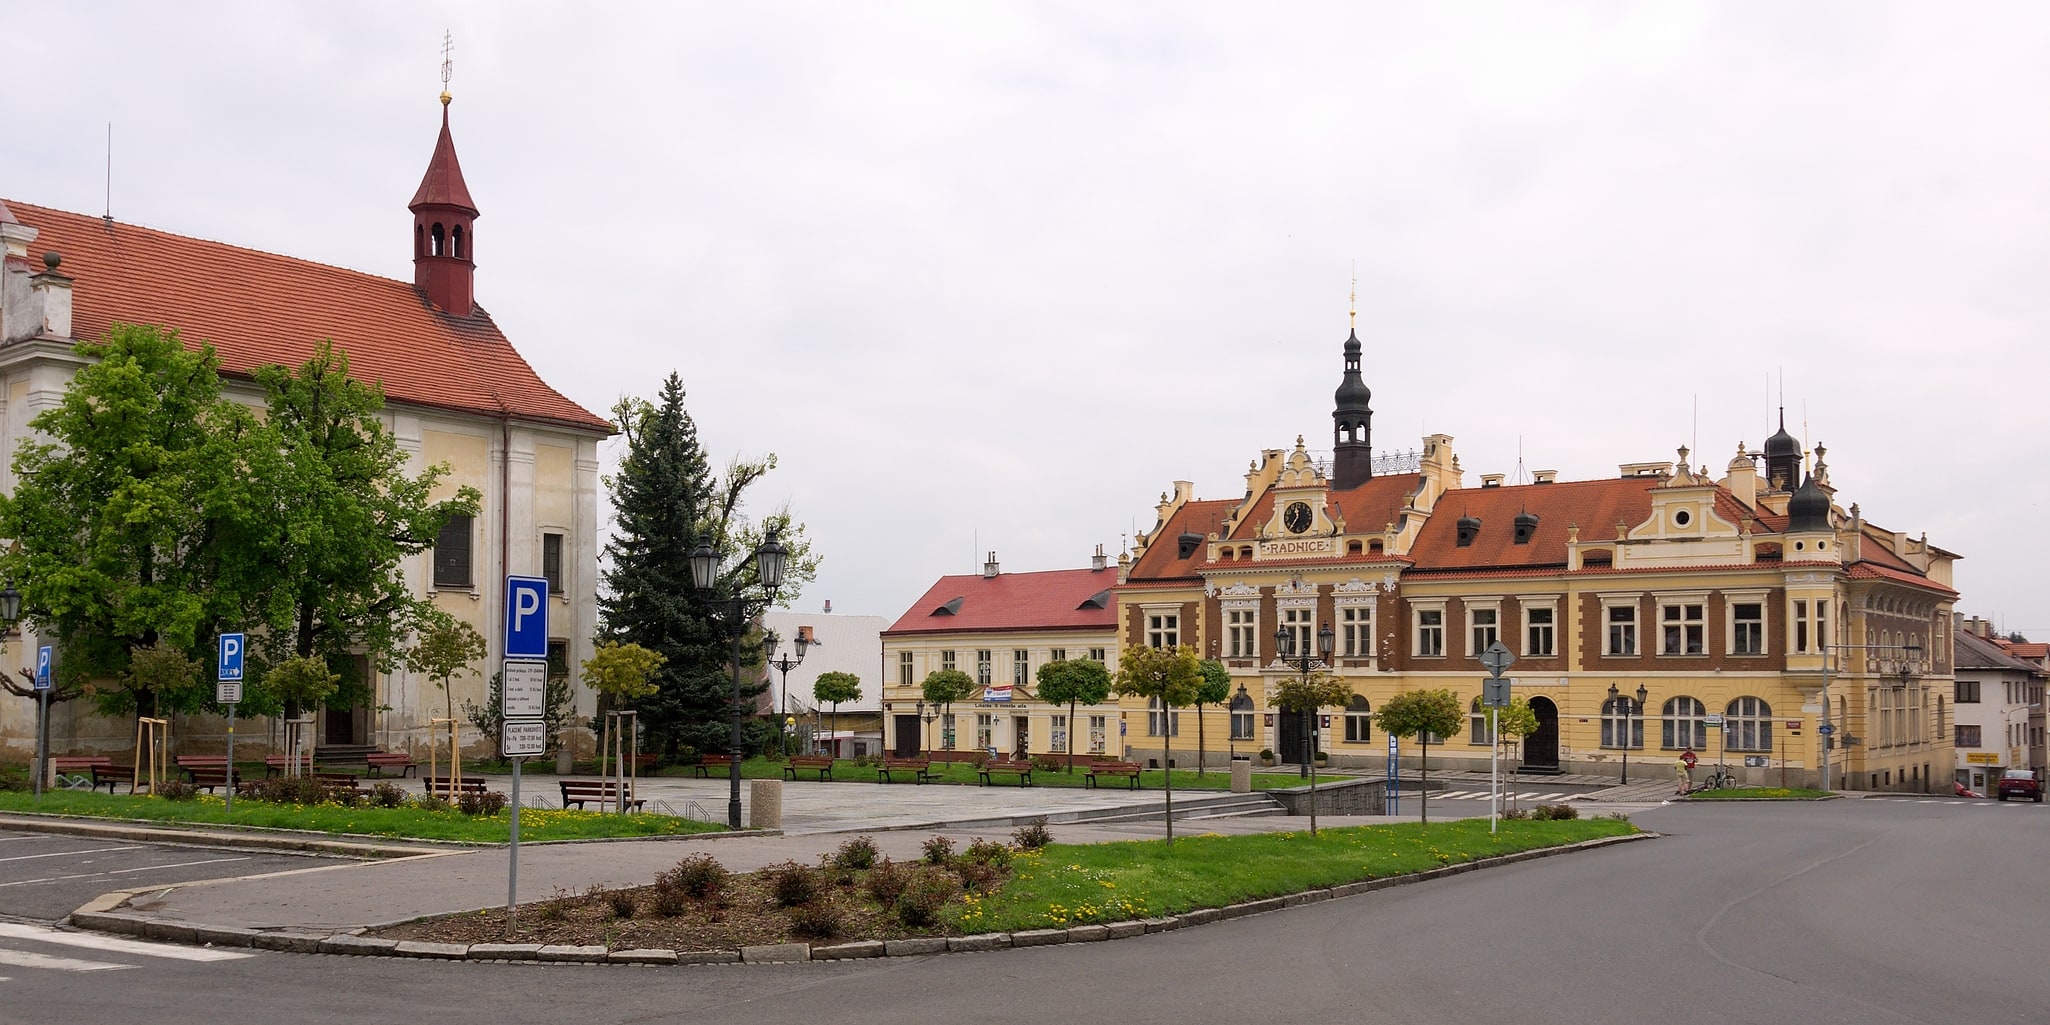 Hořovice, Tschechien